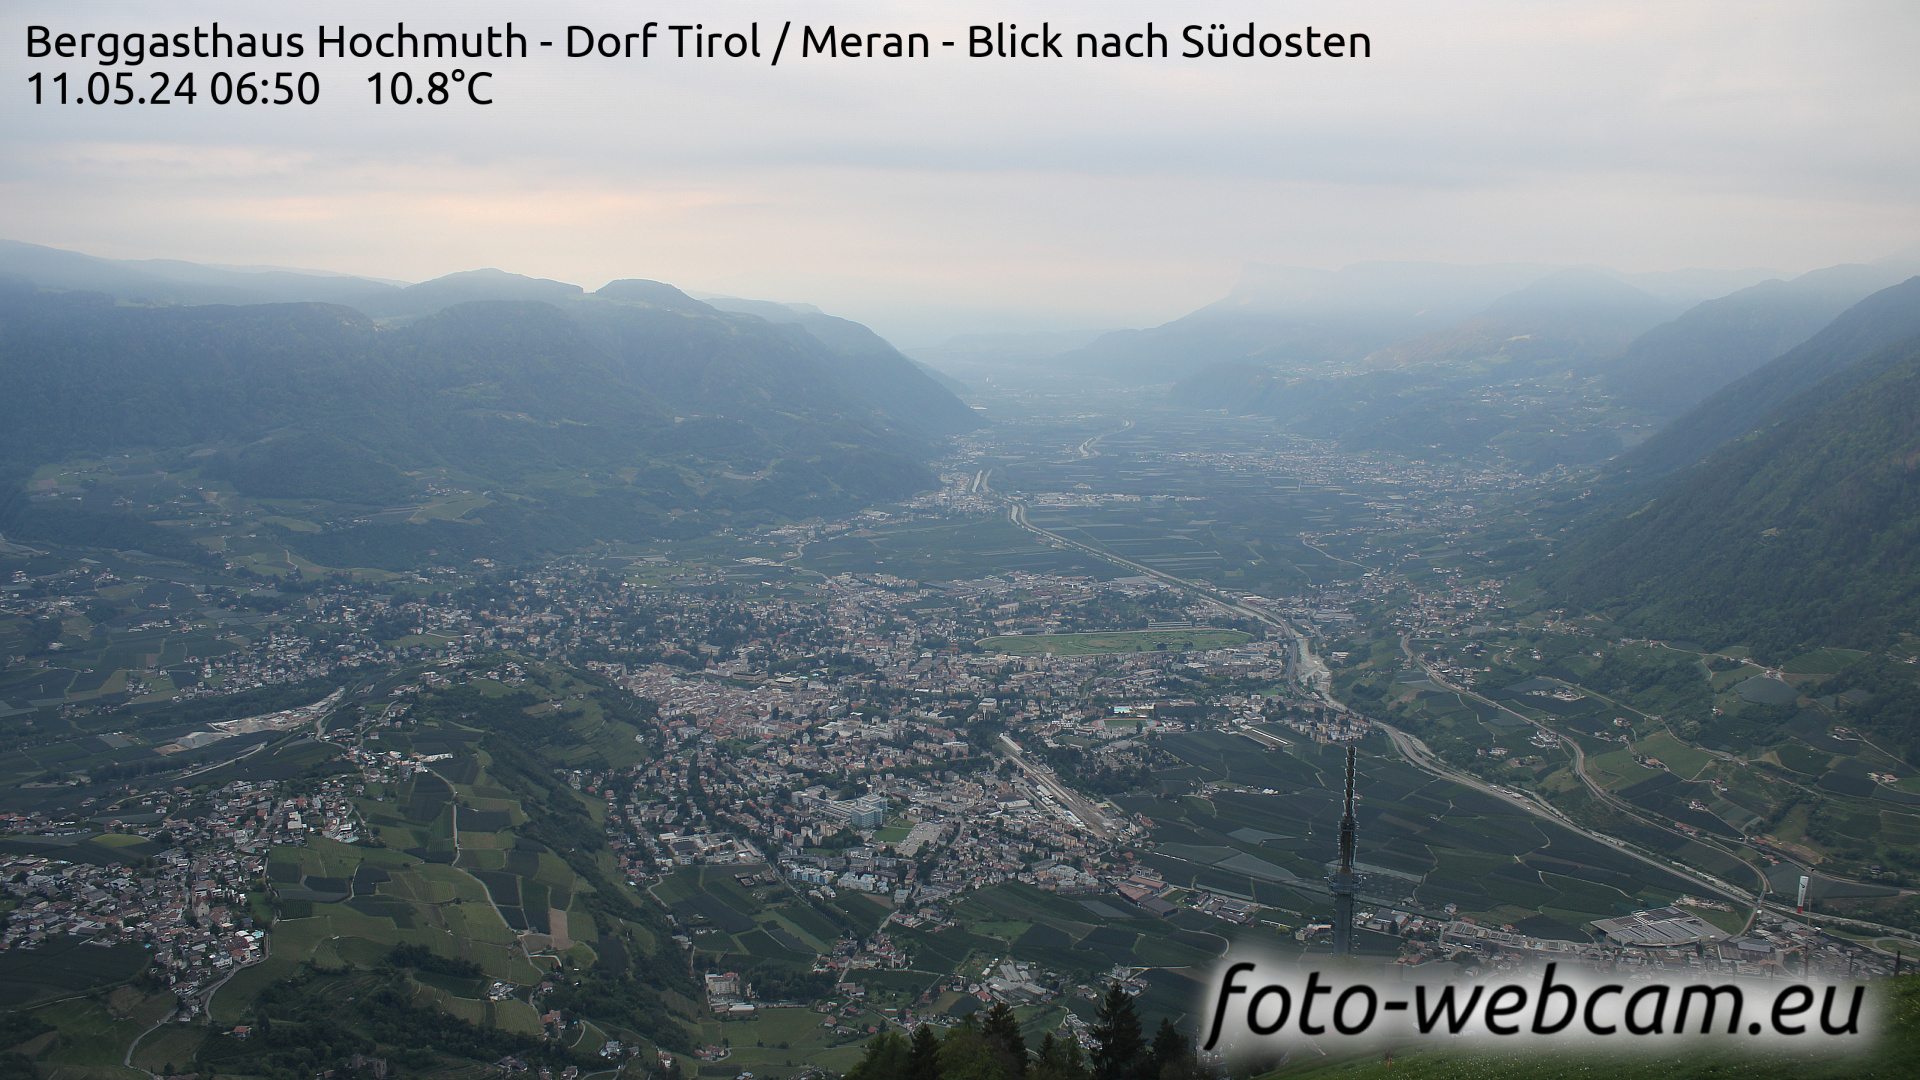 Tirol Wed. 06:56